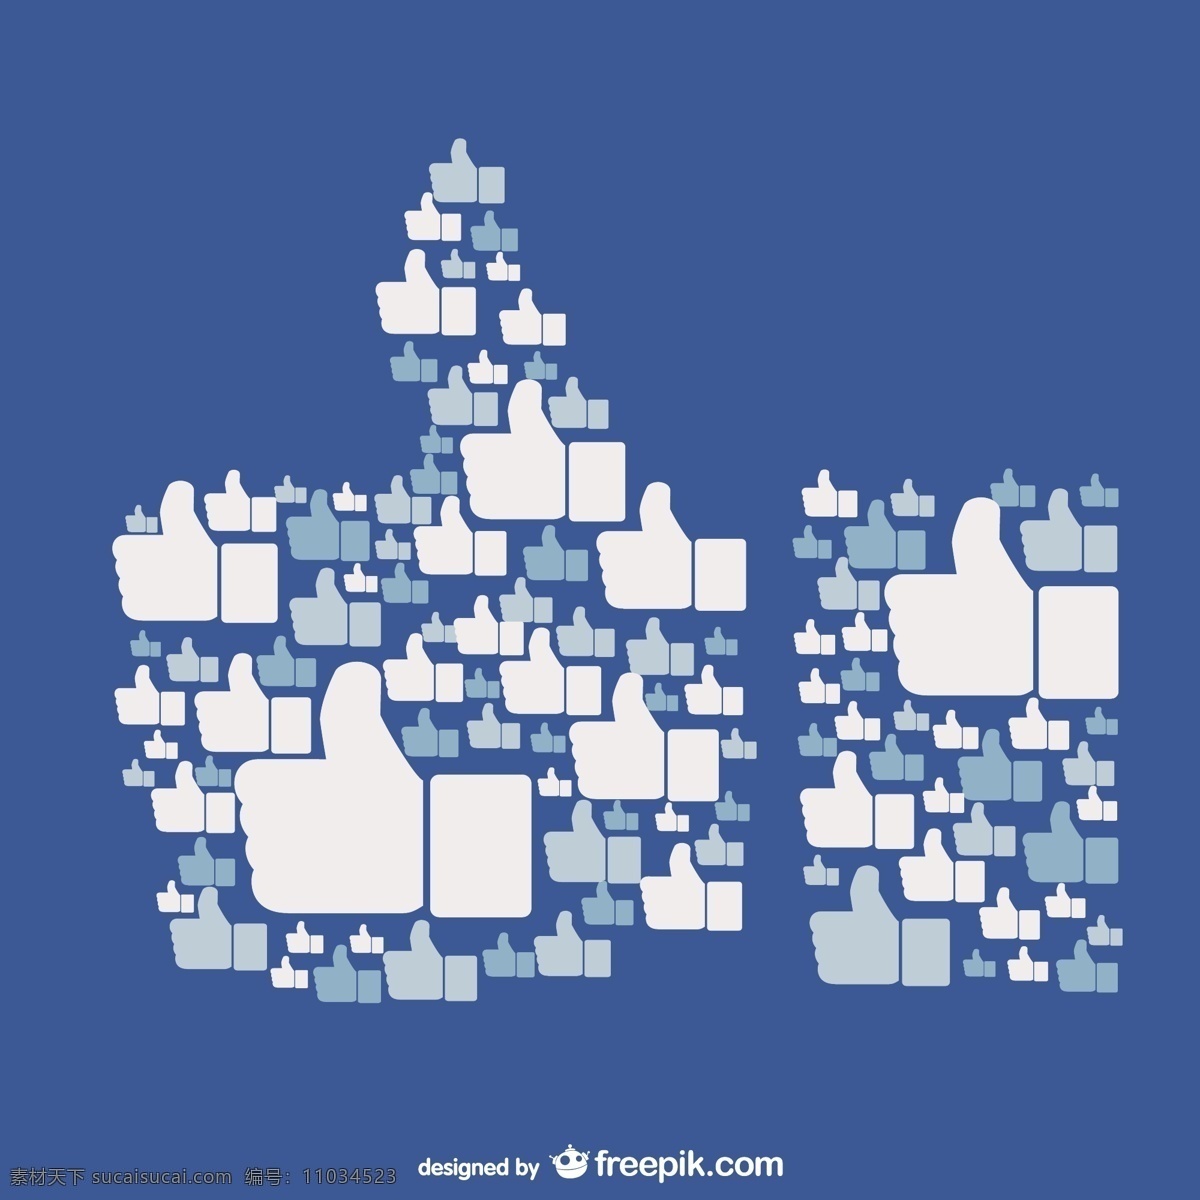 脸谱 网 概念 向量 社交媒体 脸谱网 社交 喜欢 网络 媒体 社交网络 竖起大拇指 脸谱网喜欢 拇指 上 蓝色